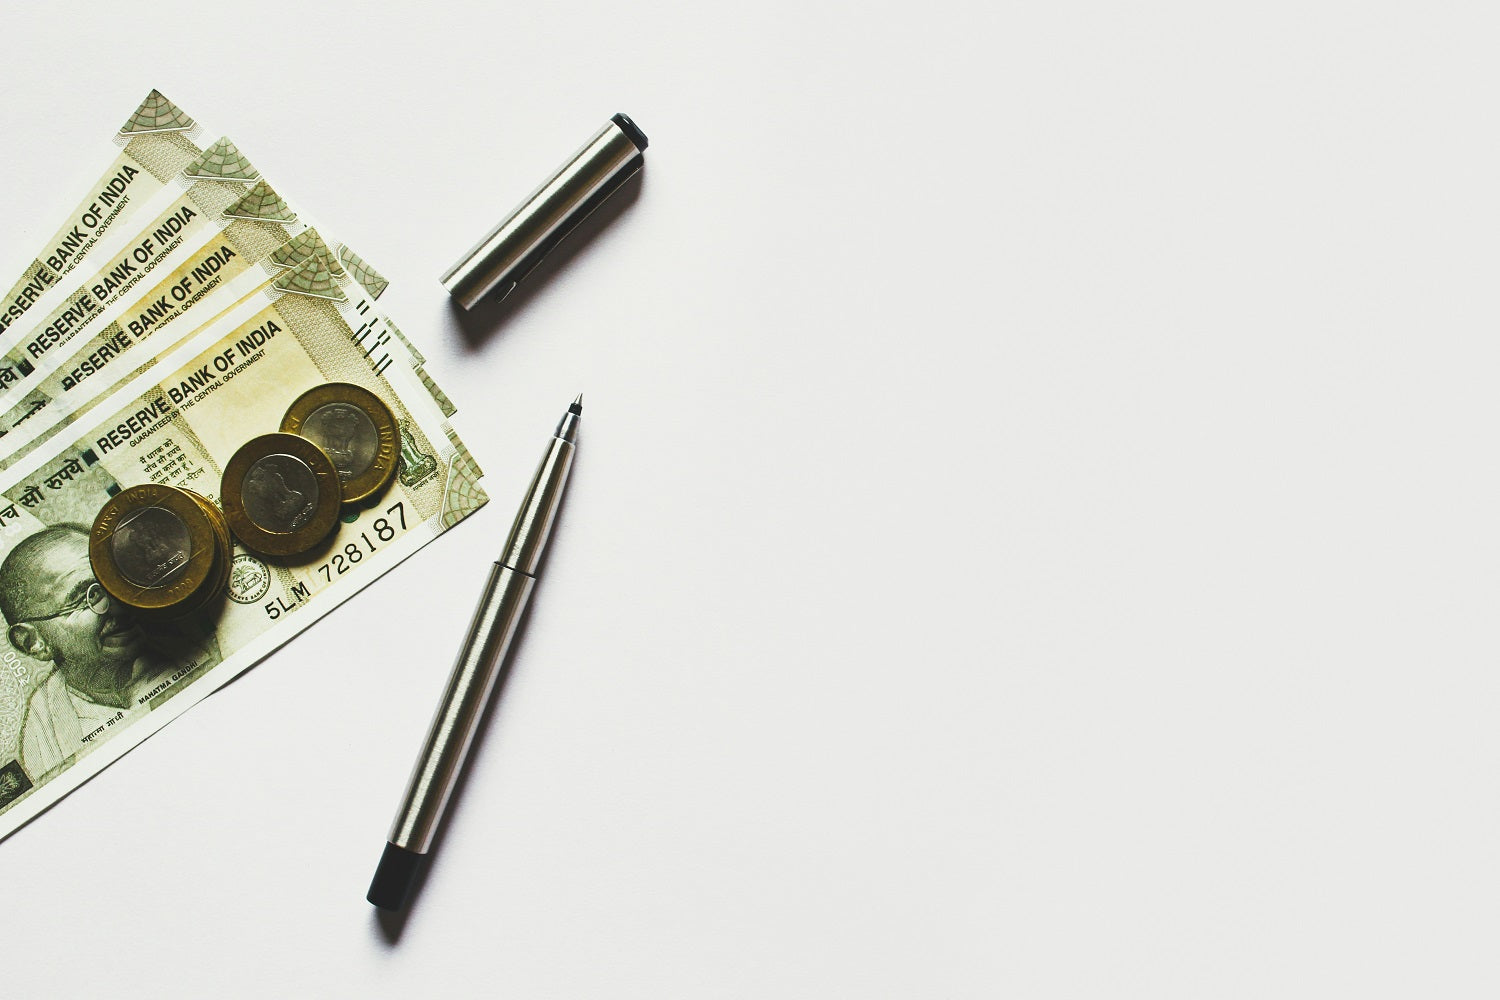 Auf einem weißen Hintergrund liegen Geldscheine, Geldmünzen und ein offener Kugelschreiber.